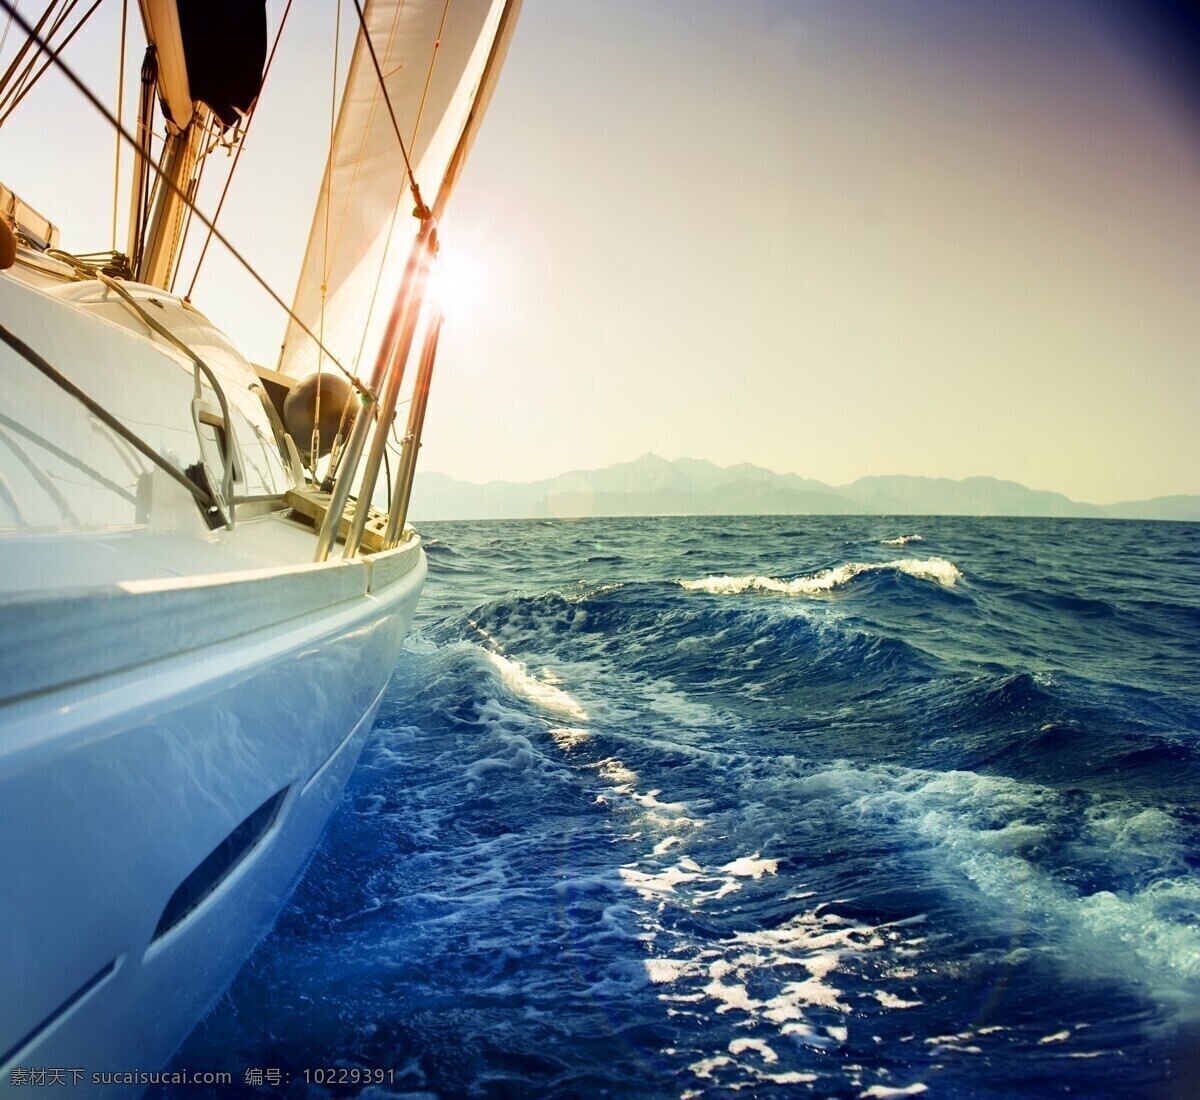 海上帆船 大海 帆船 船 海 海景 自然景观 自然风景